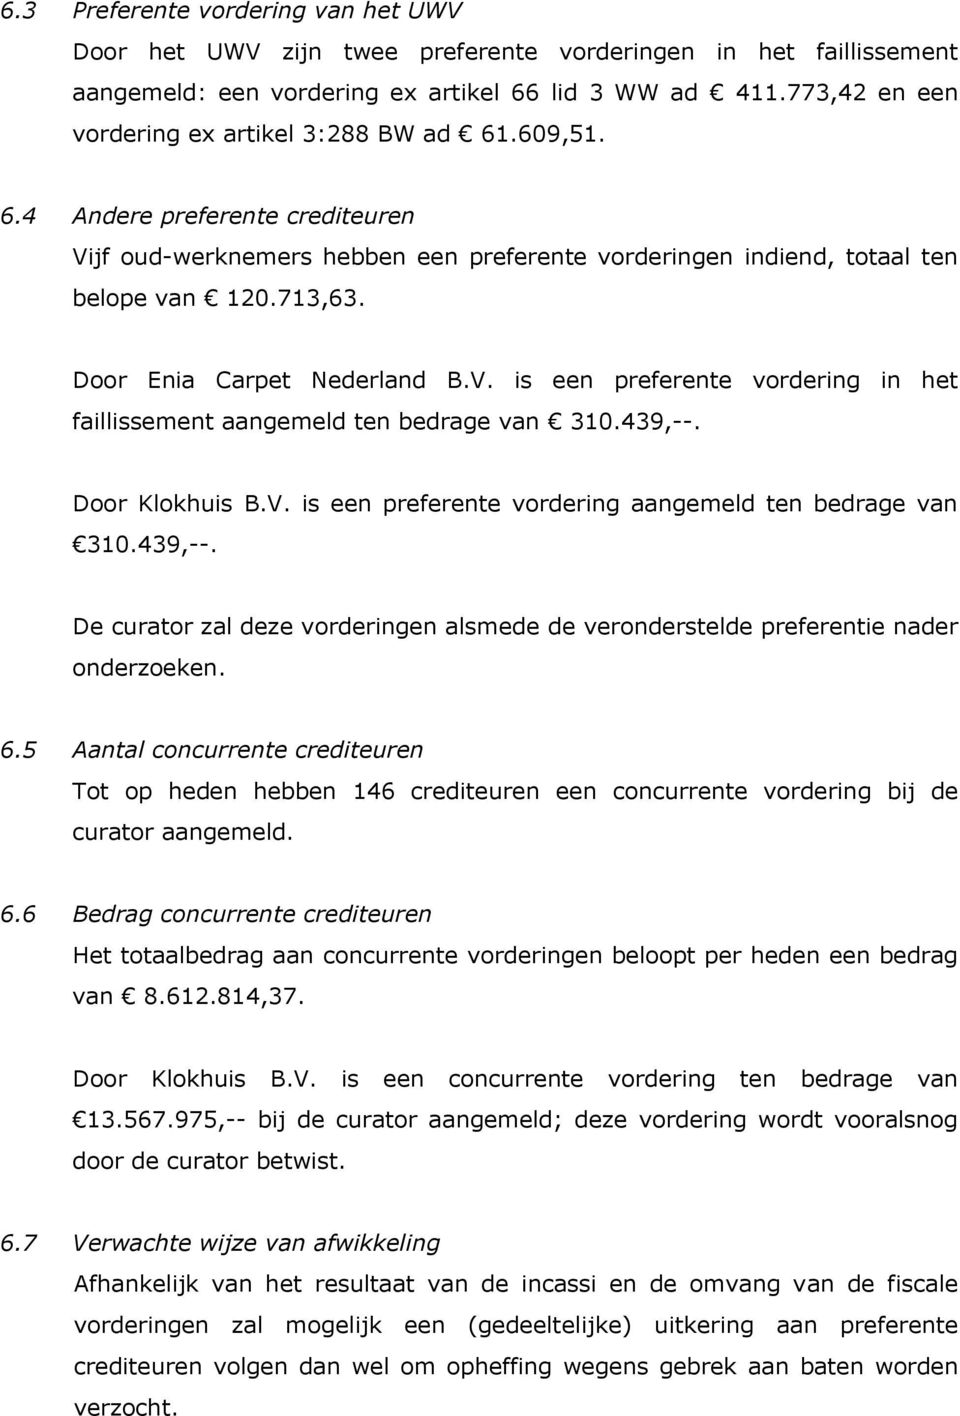 Door Enia Carpet Nederland B.V. is een preferente vordering in het faillissement aangemeld ten bedrage van 310.439,--. Door Klokhuis B.V. is een preferente vordering aangemeld ten bedrage van 310.